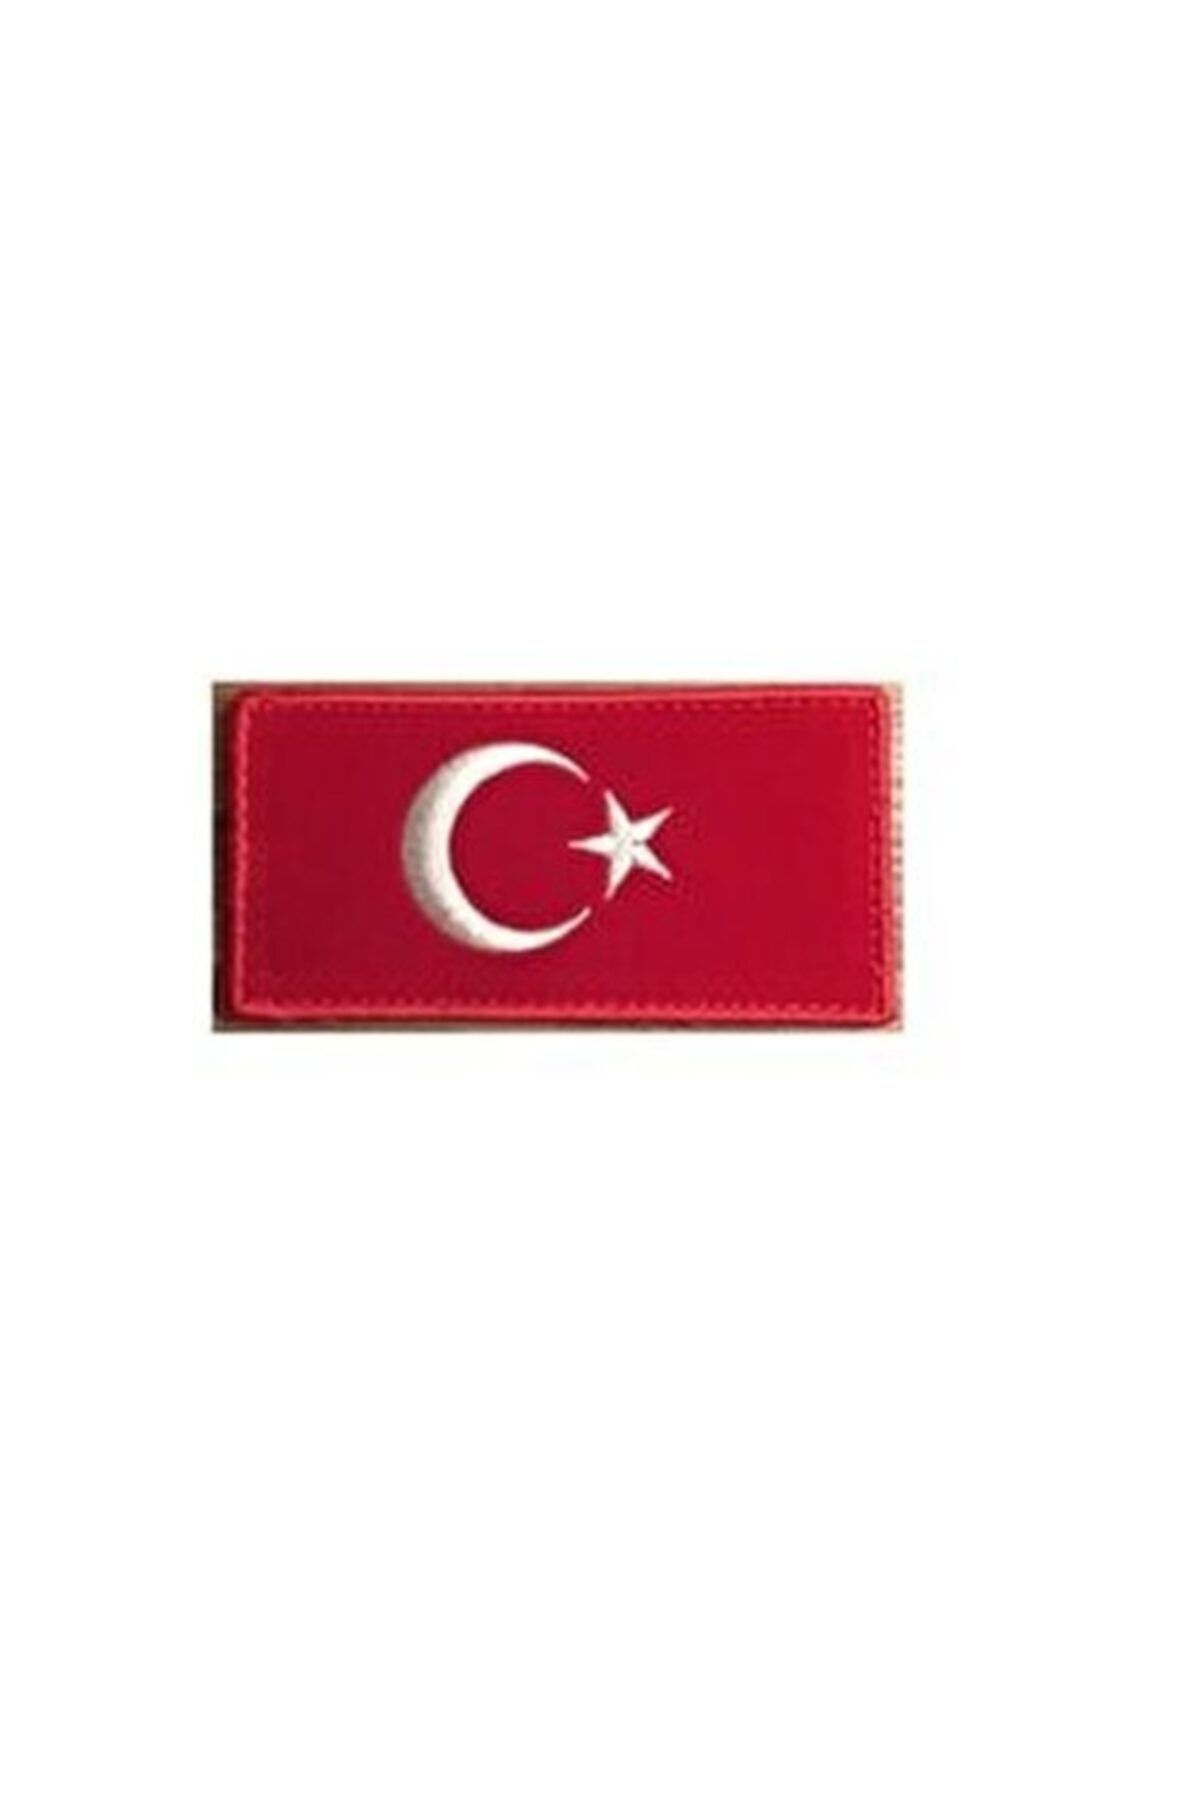 StüdyoÜmitTişört Buriş Türk Bayrağı Arma Bayrak 7 X 4 Cm Arma Patch Peç Ve Kot Yamaları (dikilen Model)